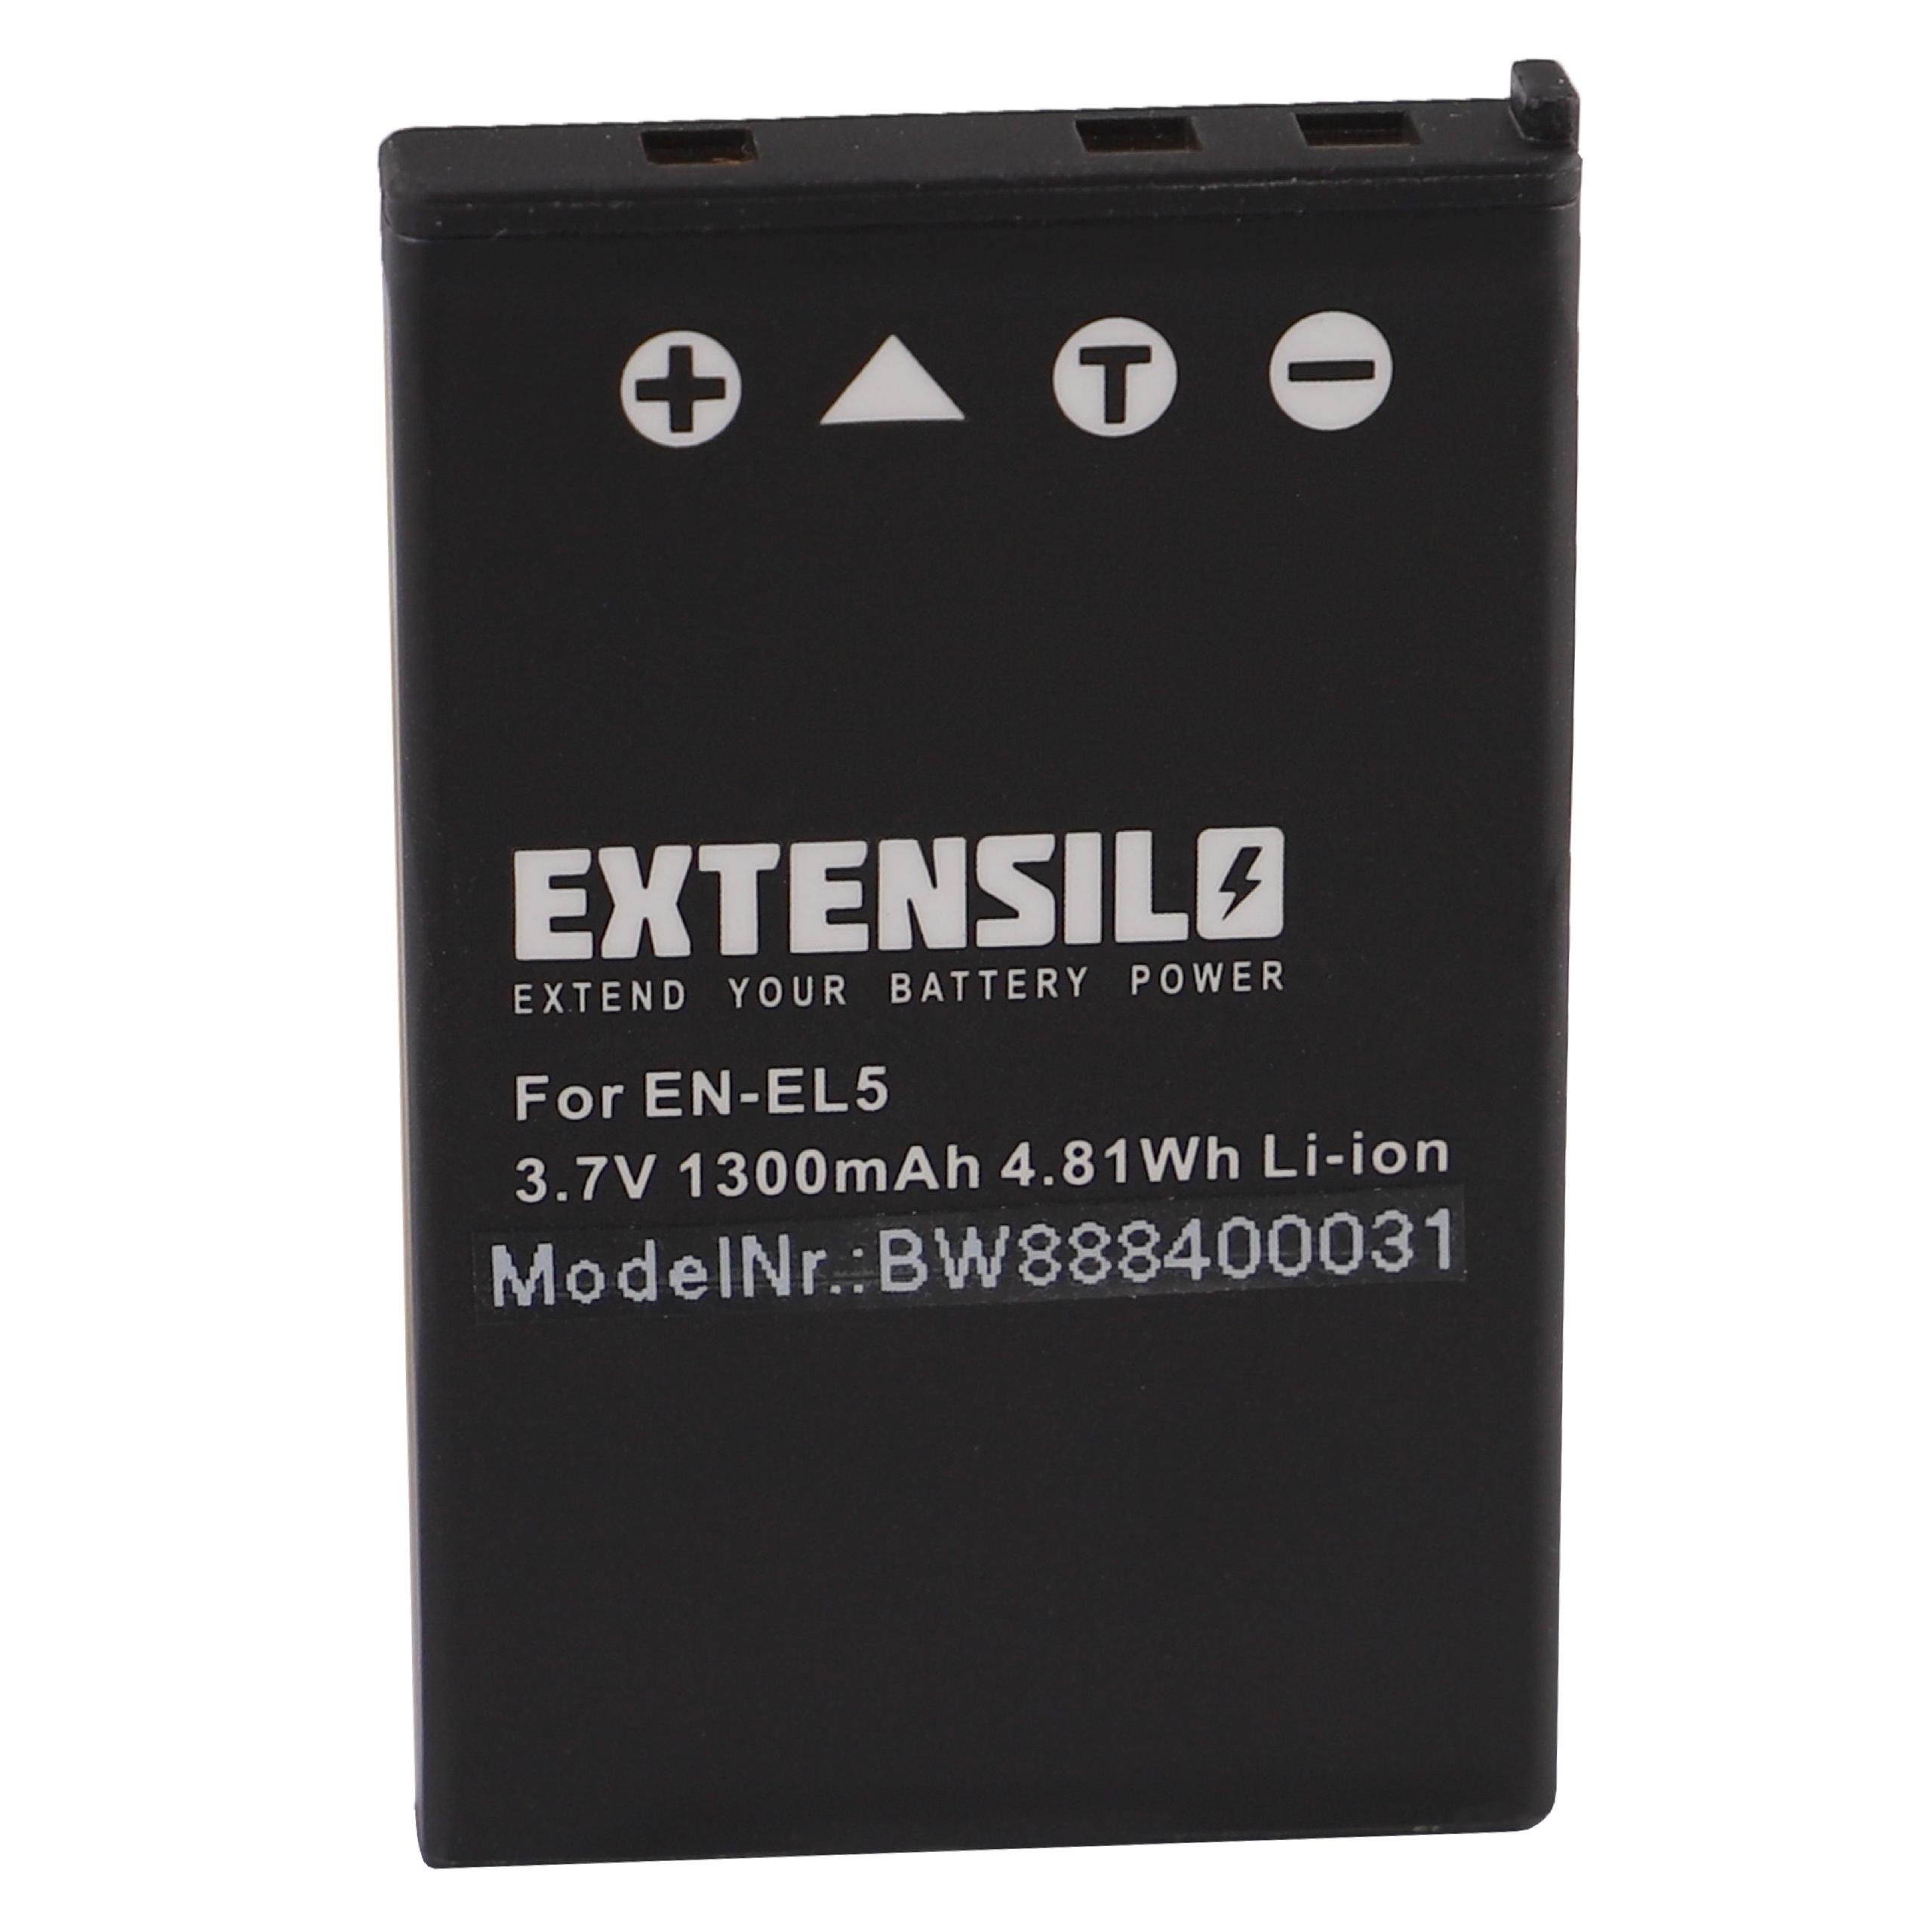 Battery Replacement for Nikon EN-EL5 - 1300mAh, 3.7V, Li-Ion